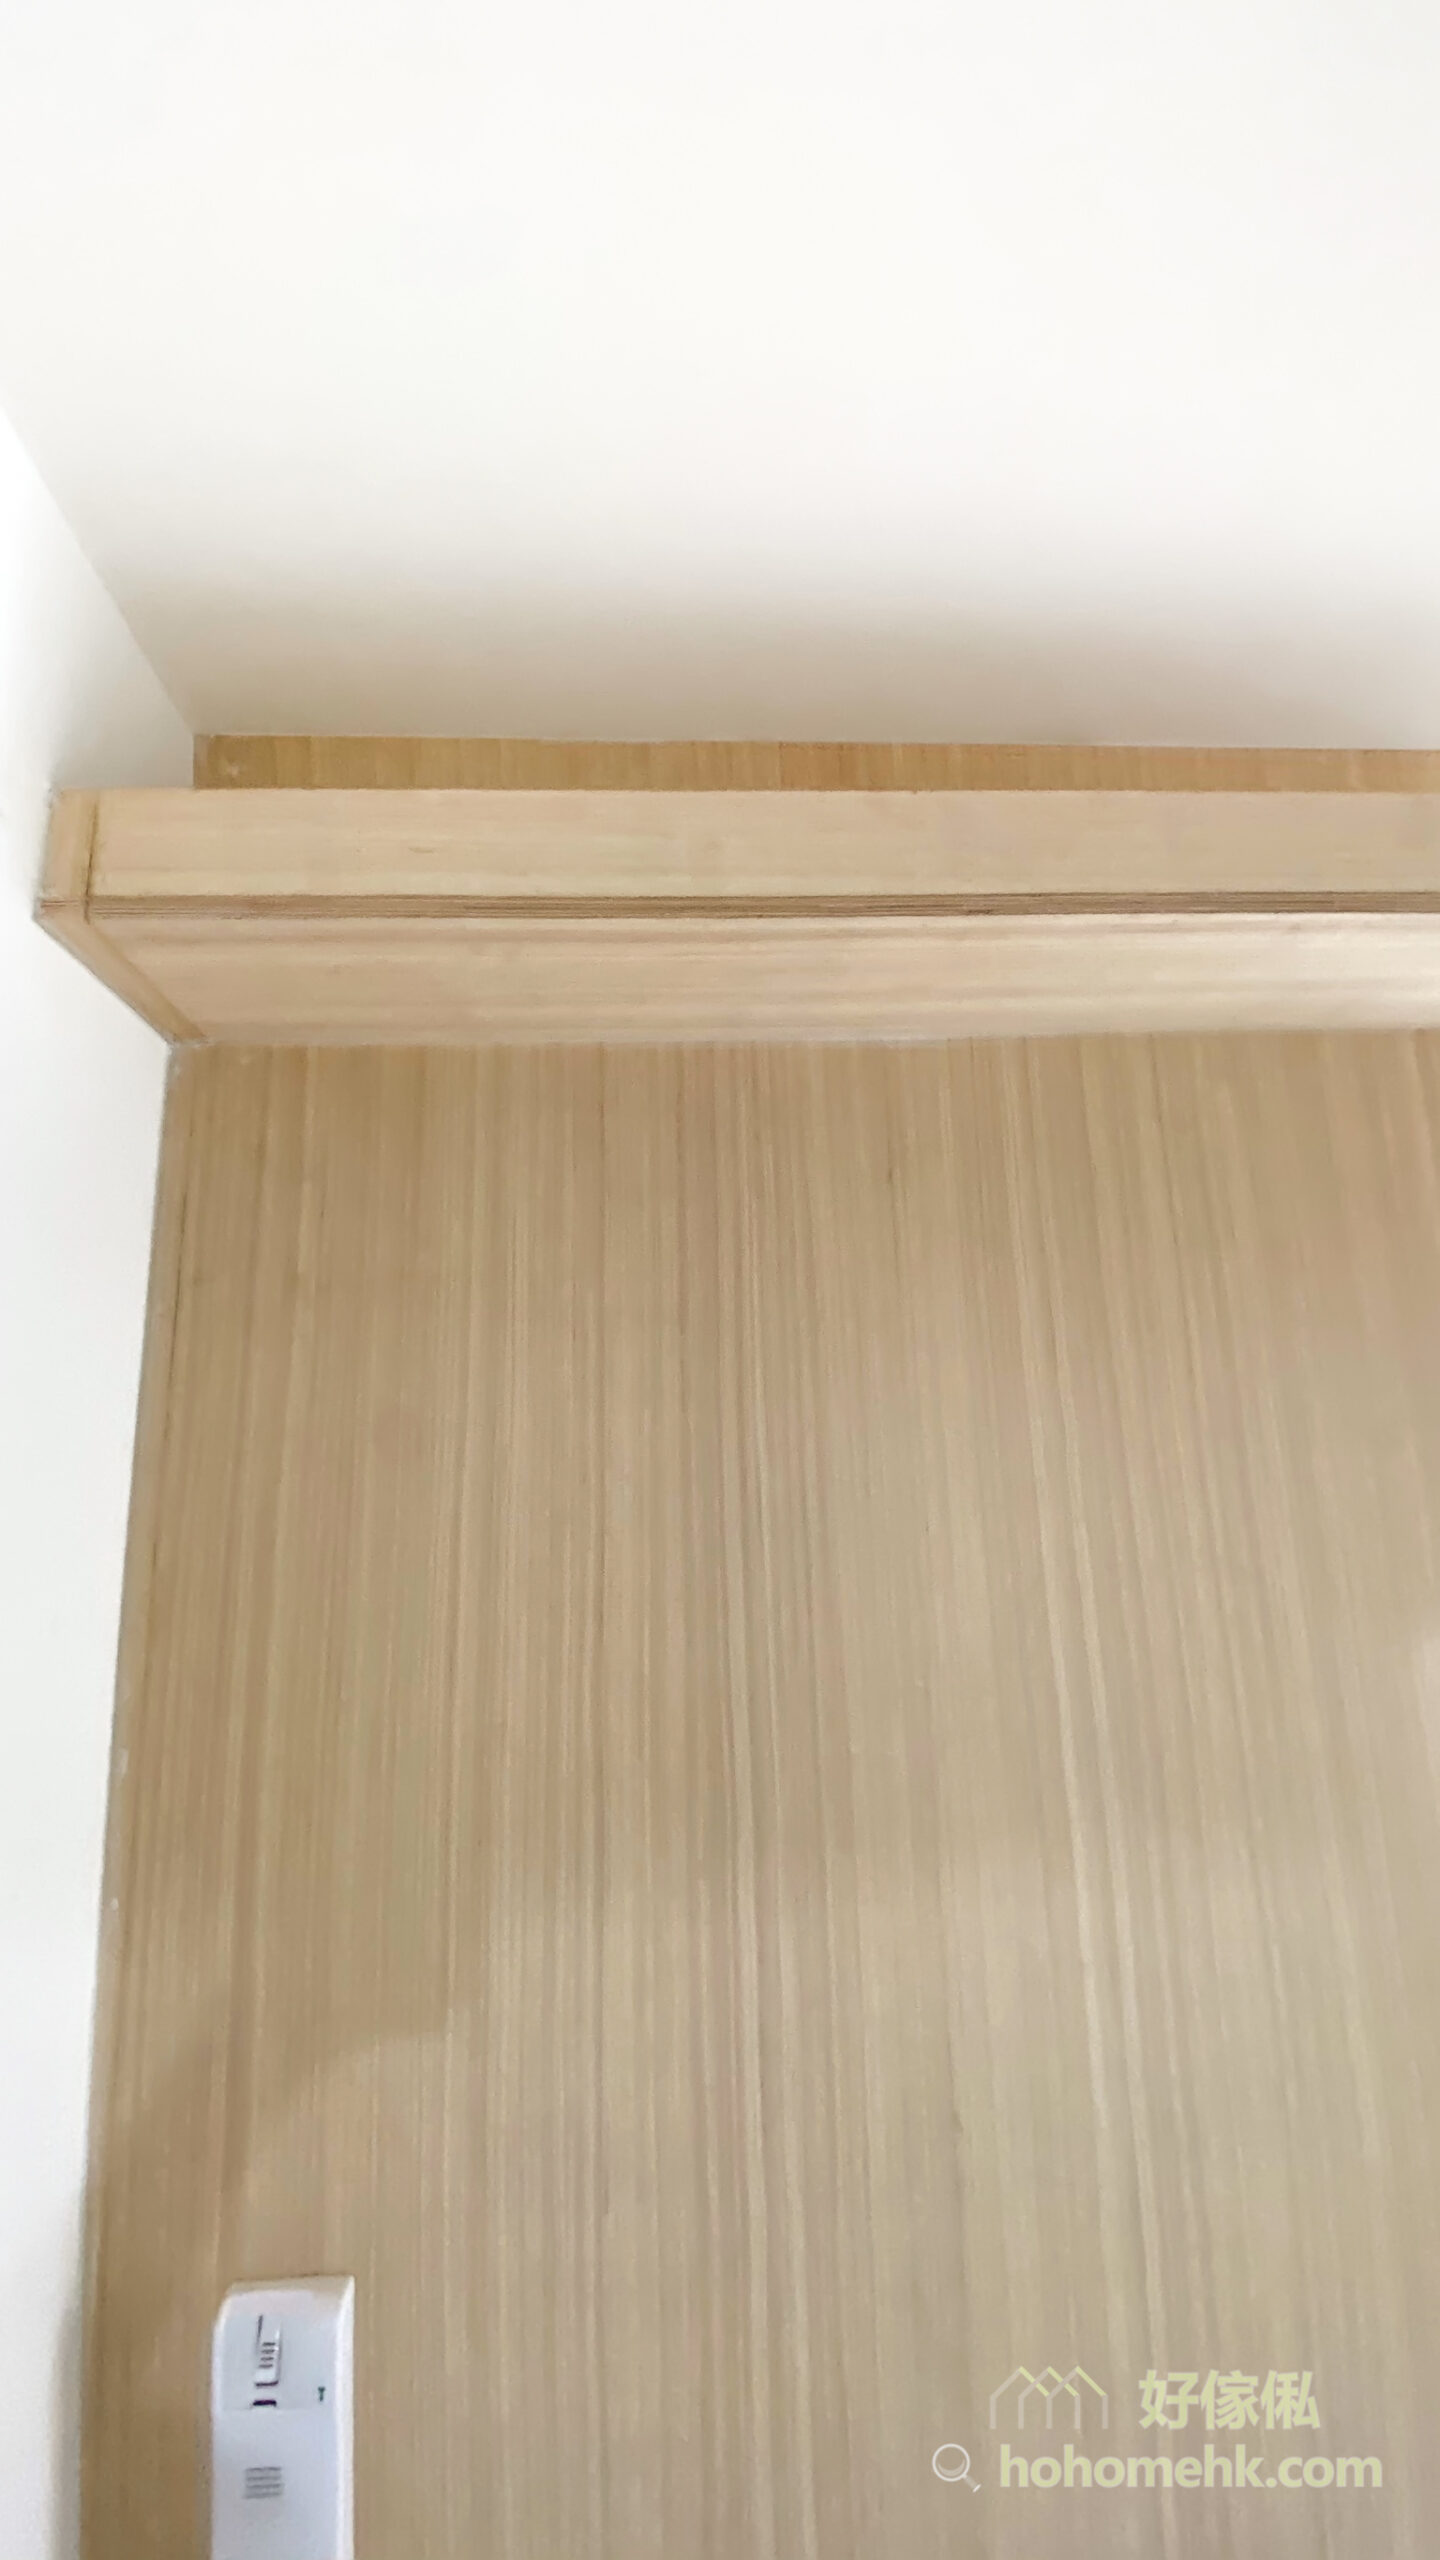 木板除了可以用來做家具和隔間外，還可以建造天花板燈槽。圍著全屋空間訂做一整列的燈槽，柔和的光線讓空間充滿溫馨感與造型感